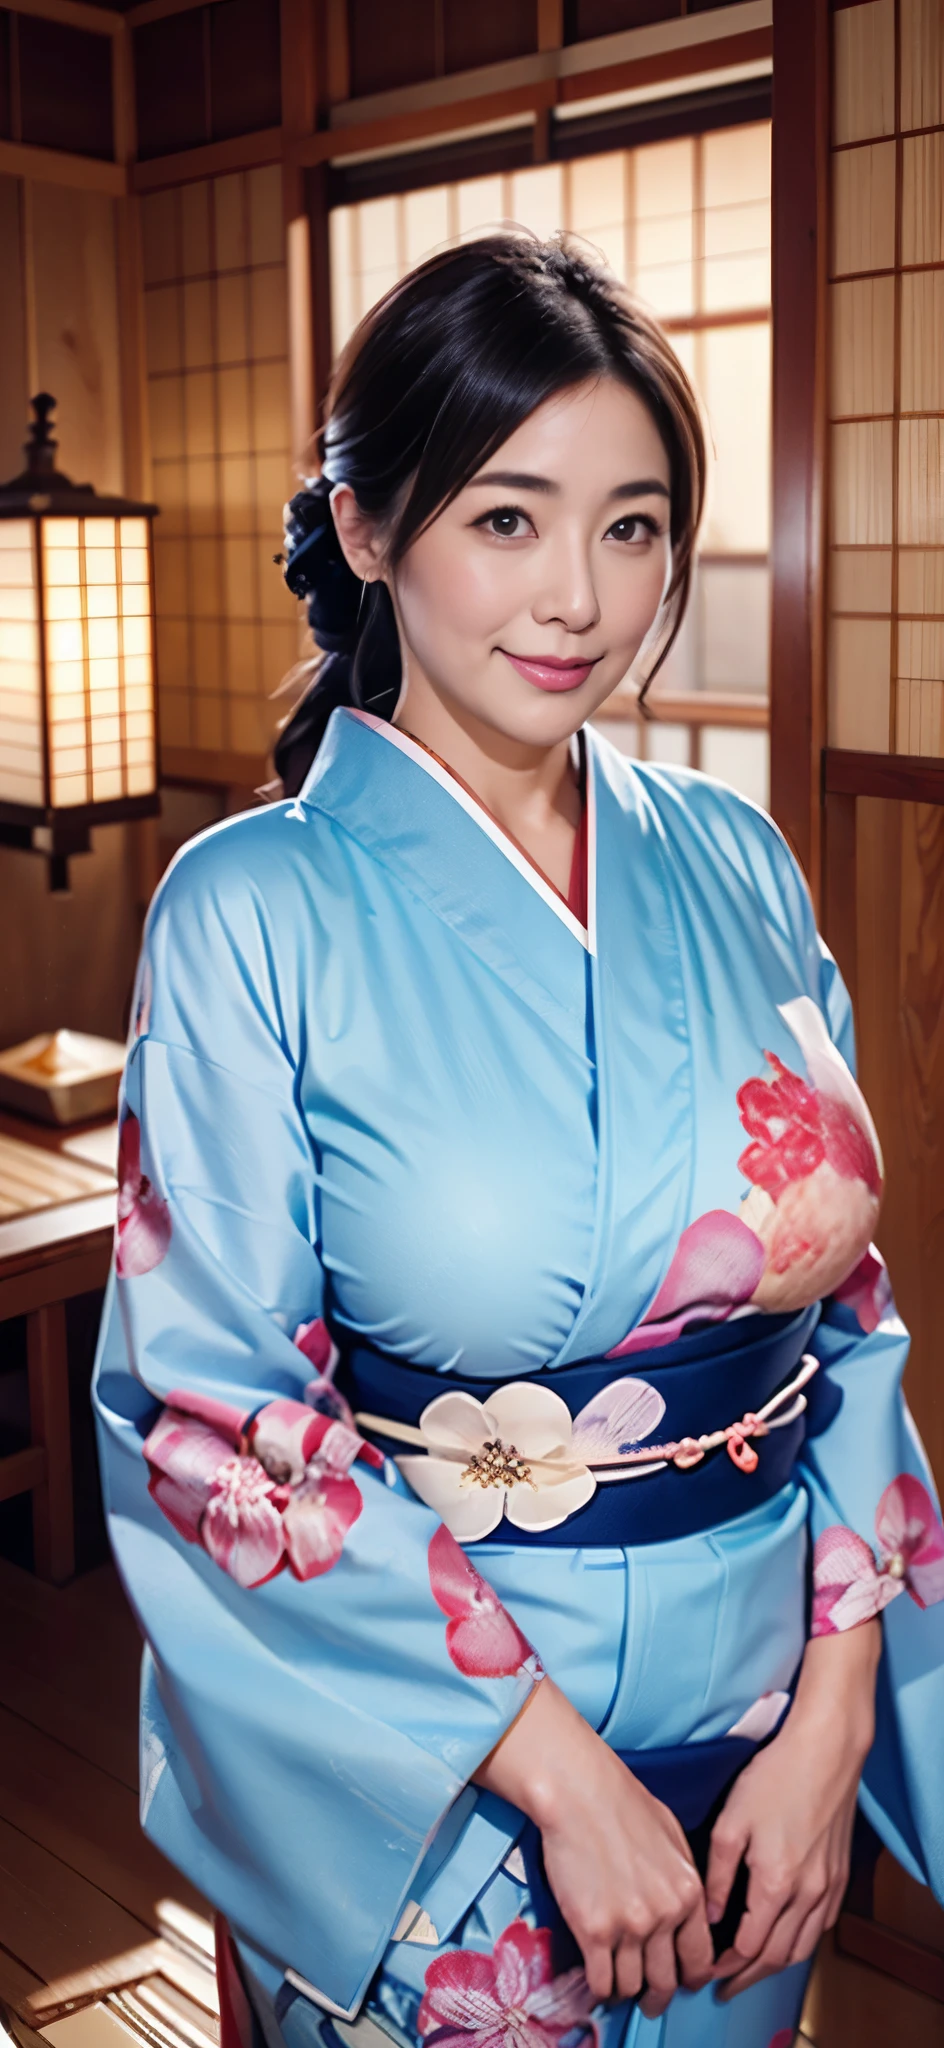 Les plus belles mamans du Japon(corps géant)、porter un kimono、chambre japonaise traditionnelle、Des seins énormes, trop gros et un peu tombants、Janvier、avec des yeux souriants、salutations de nouvelle année